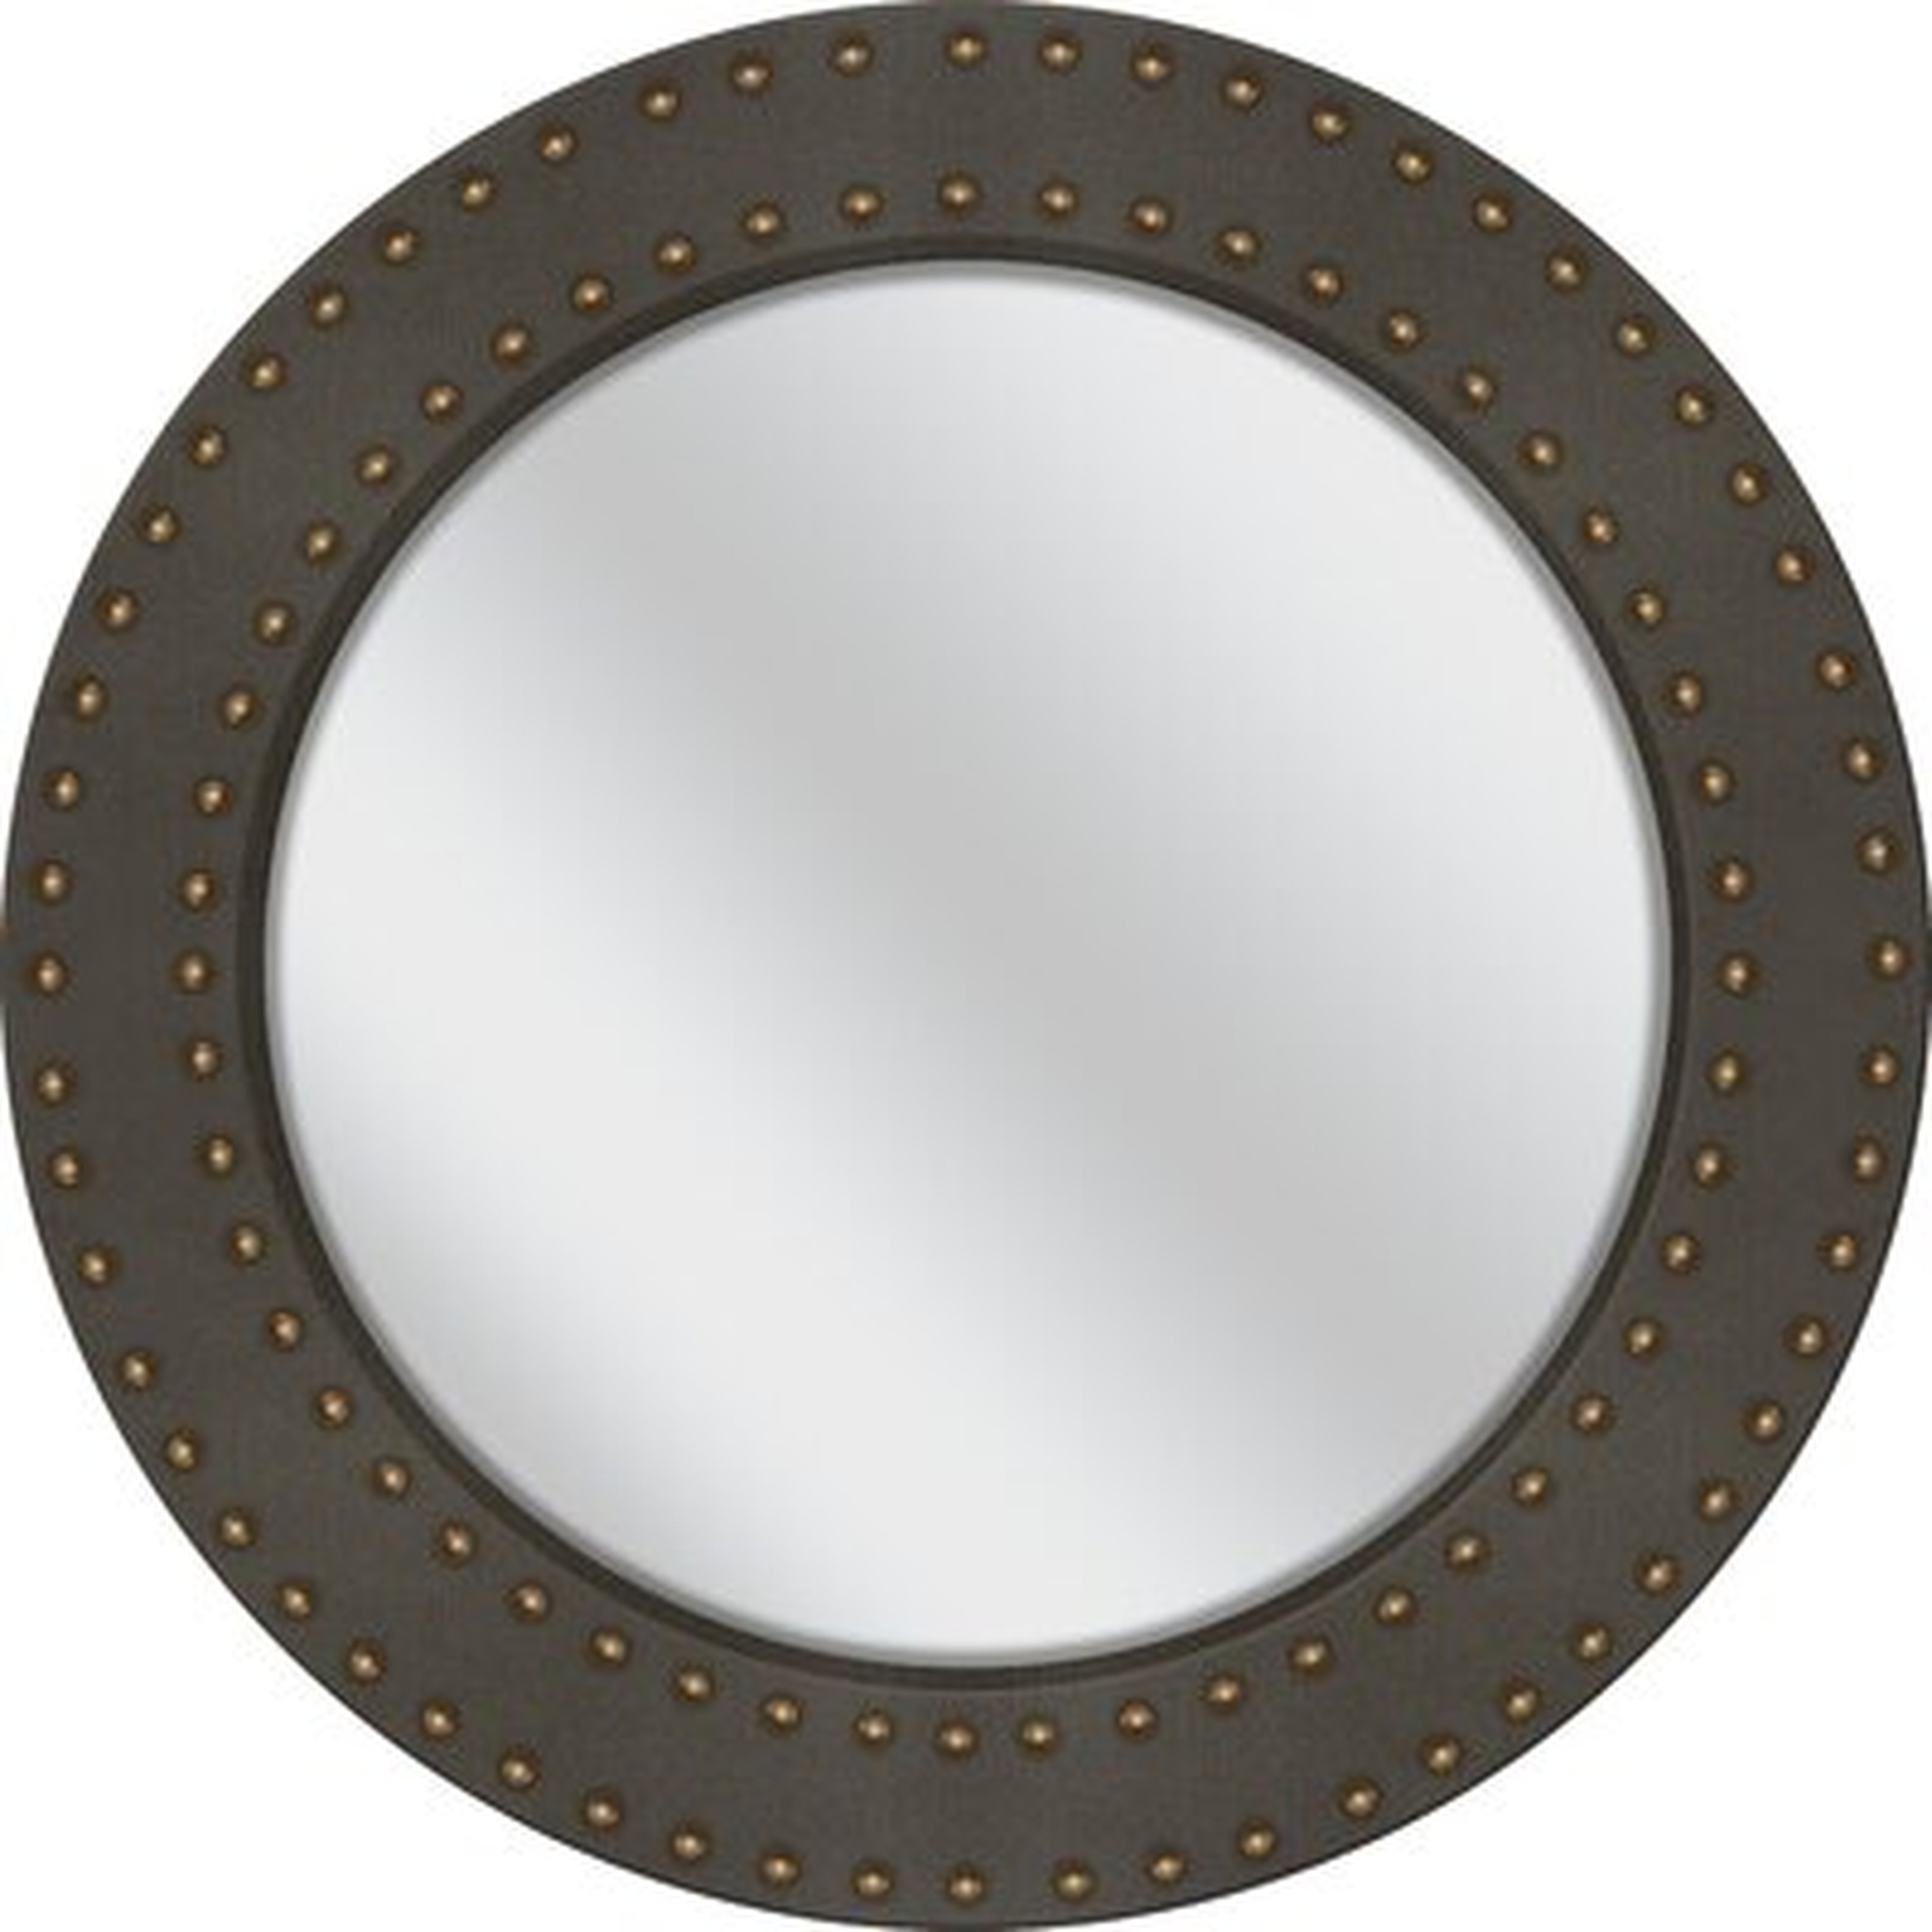 Ronna Round Mirror - Wayfair